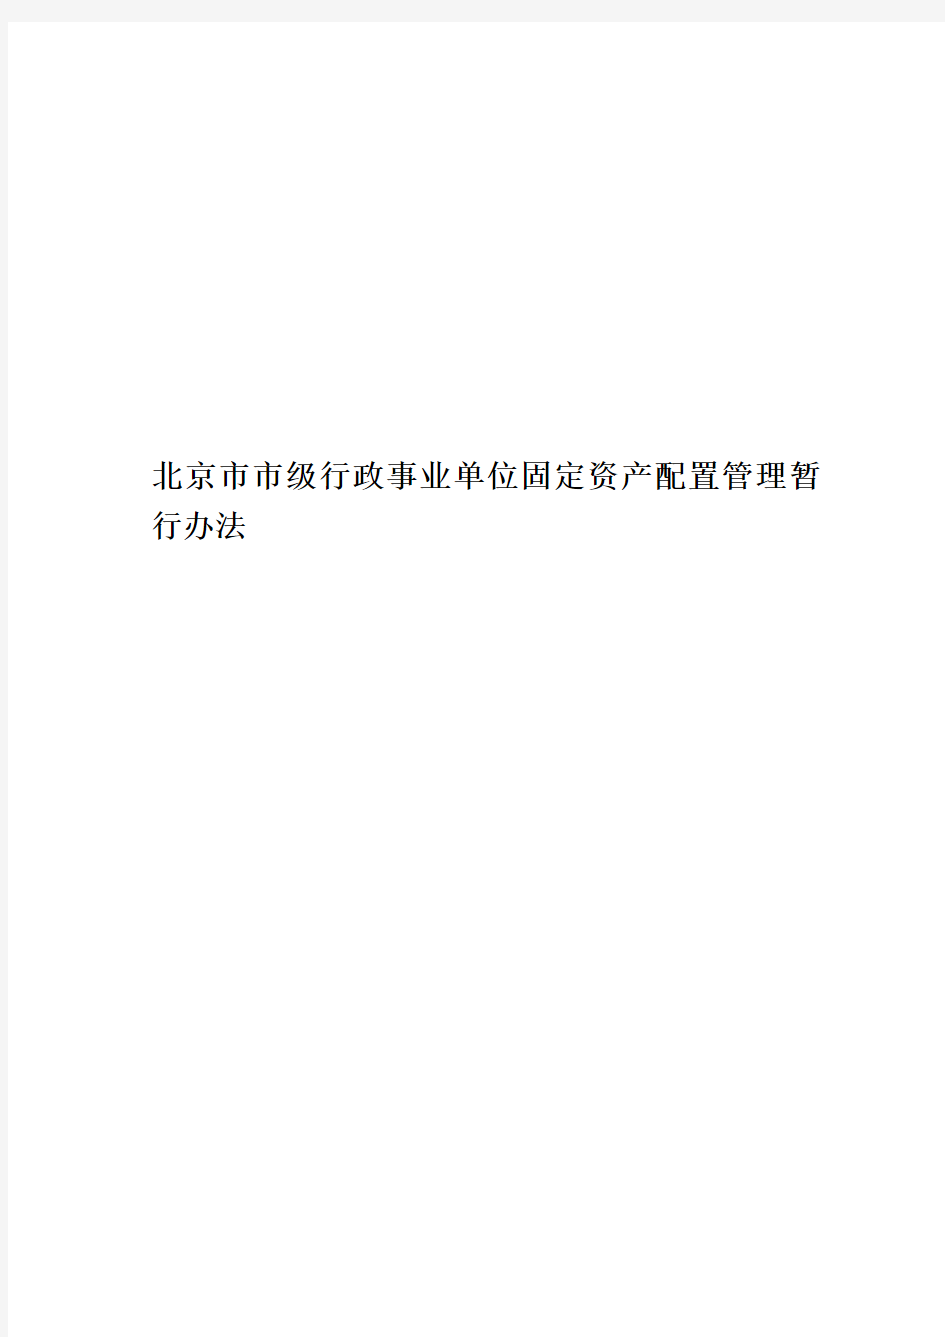 北京市市级行政事业单位固定资产配置管理暂行办法